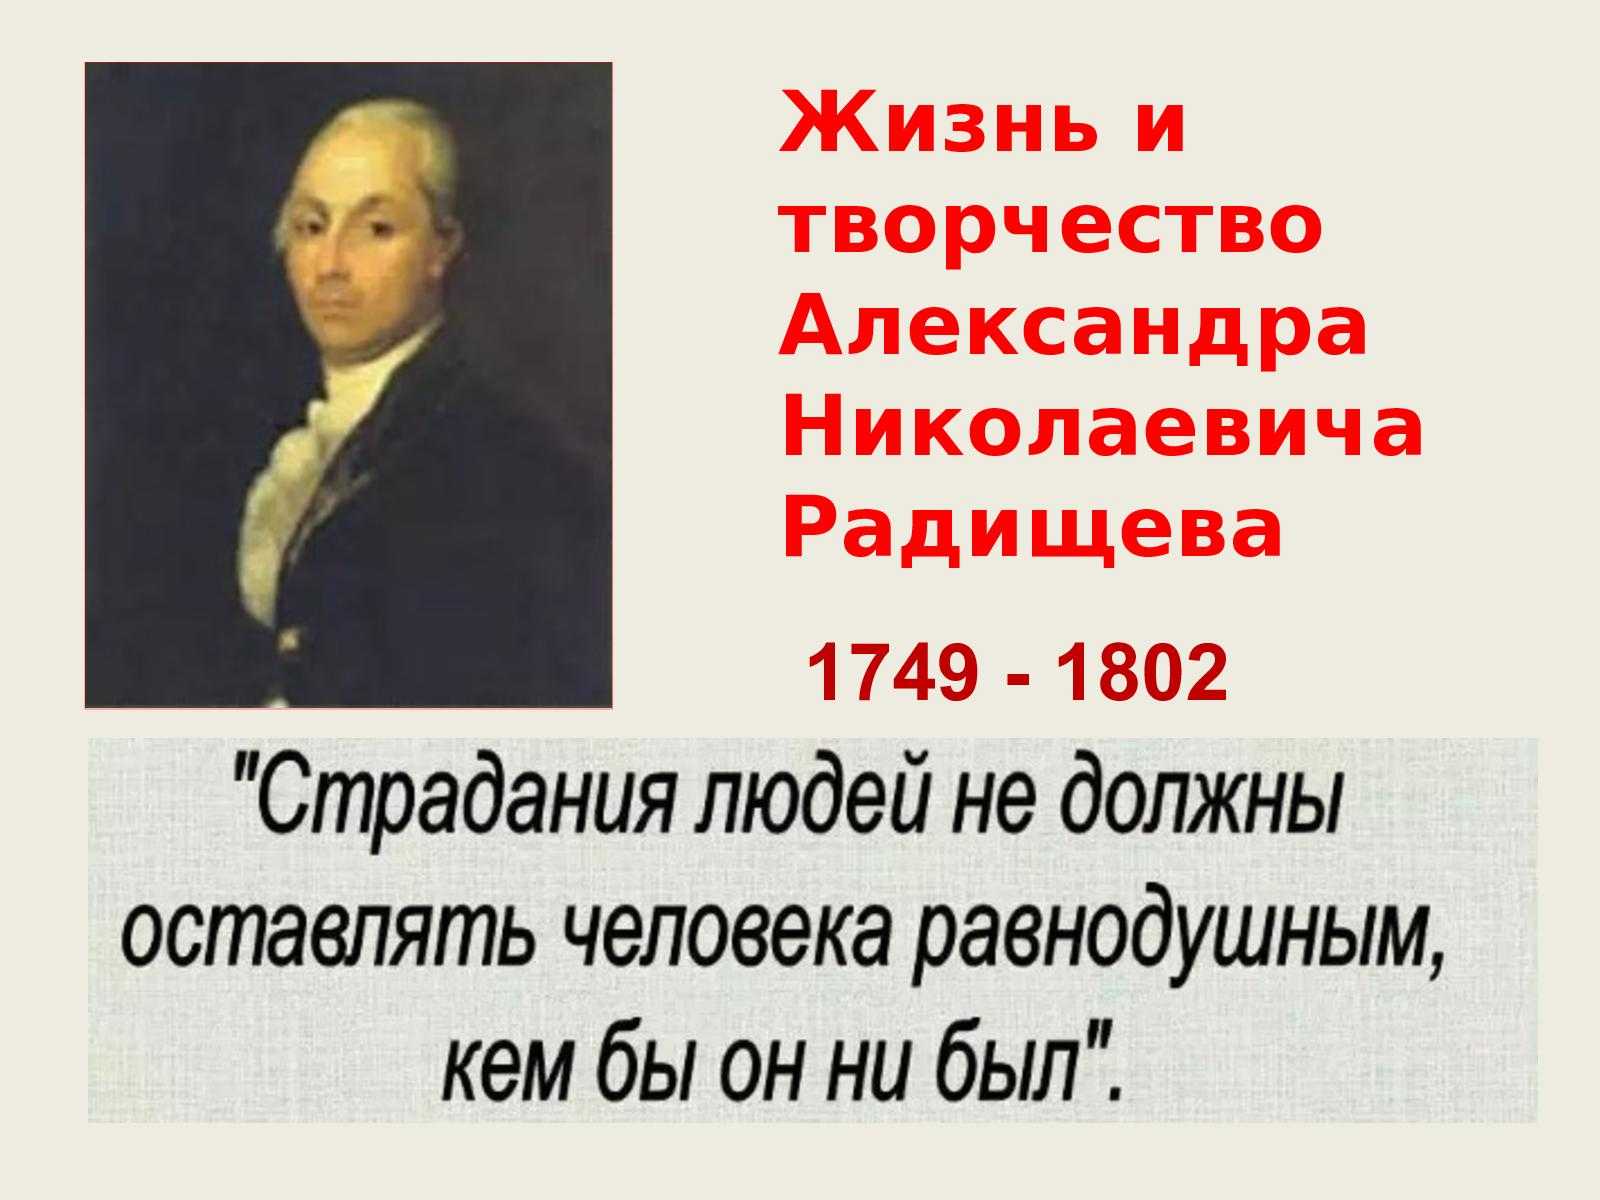 А н радищев идеи. А.Н. Радищева (1749-1802). А.Н. Радищев (1749-1802). Философия а.н. Радищева (1749-1802)..